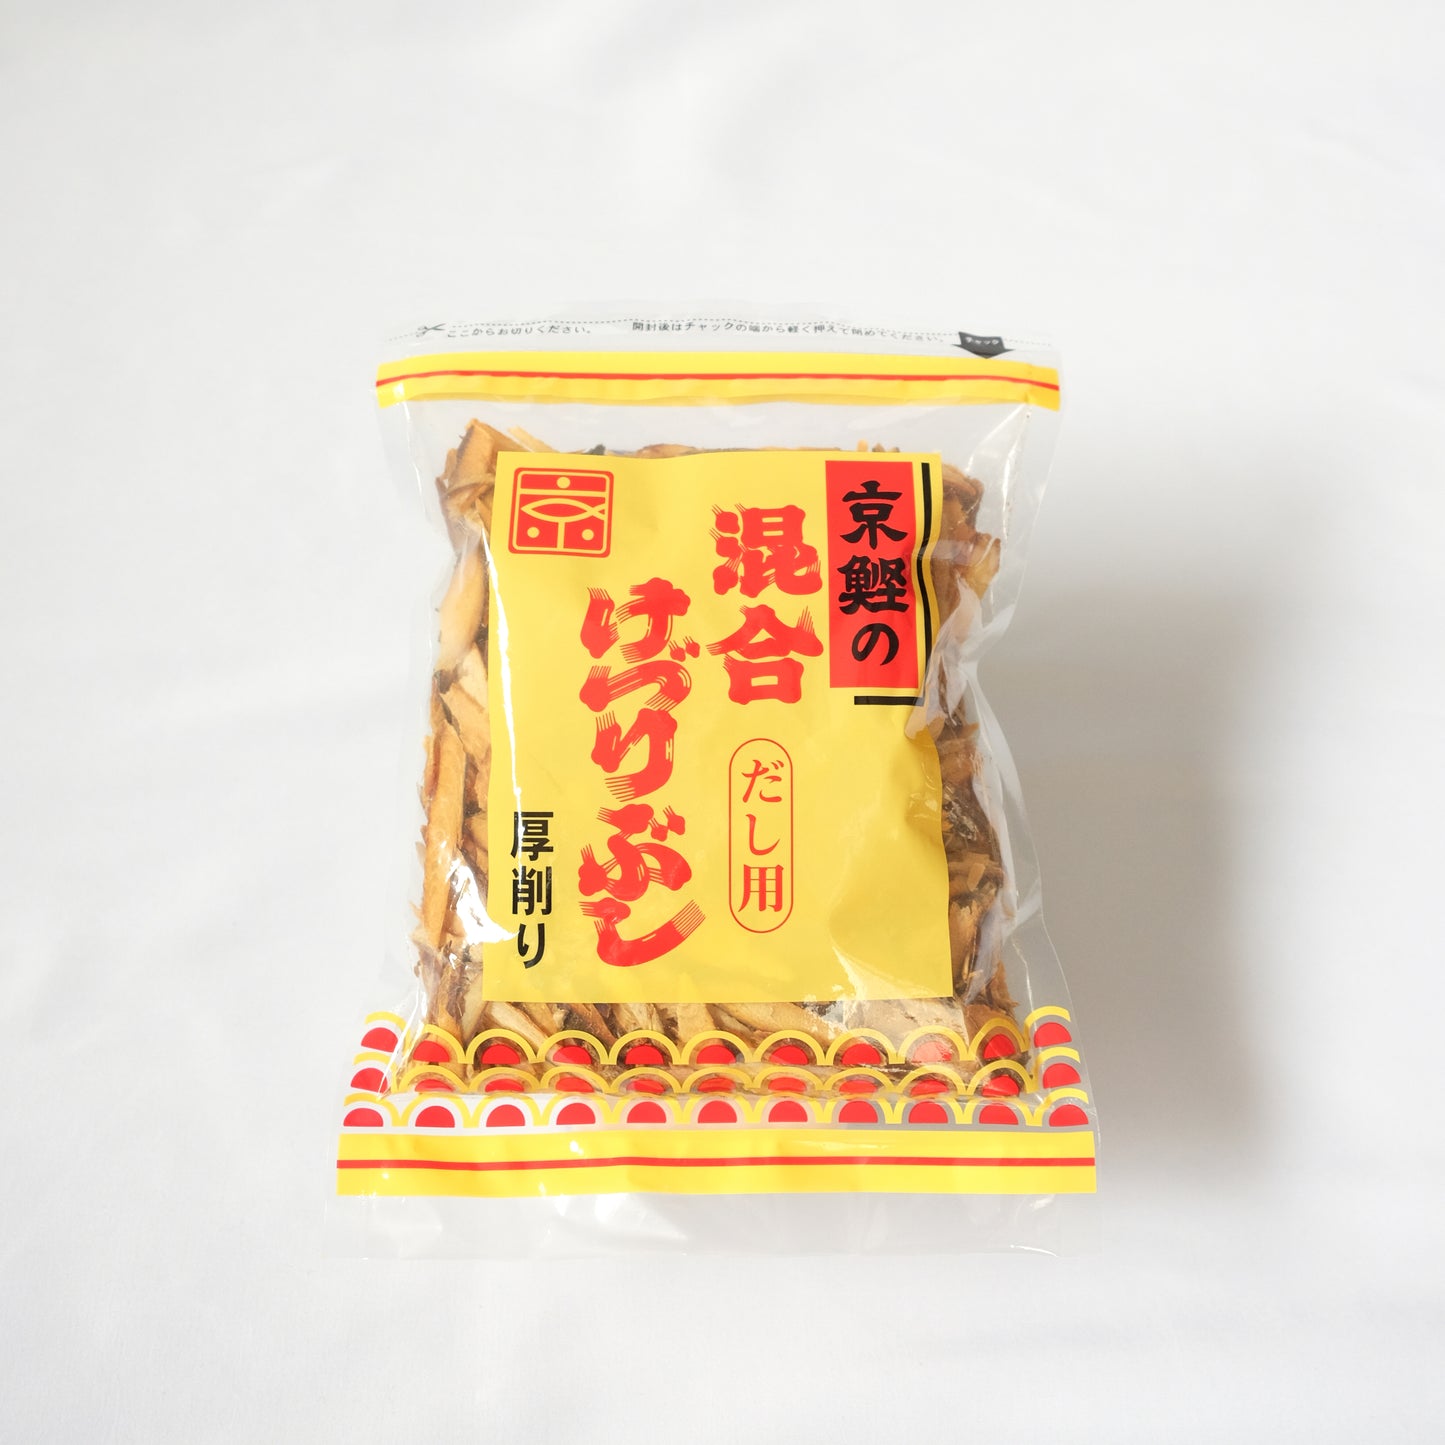 Mixed Kezuribushi No.12 1 bag 200g [6696104]